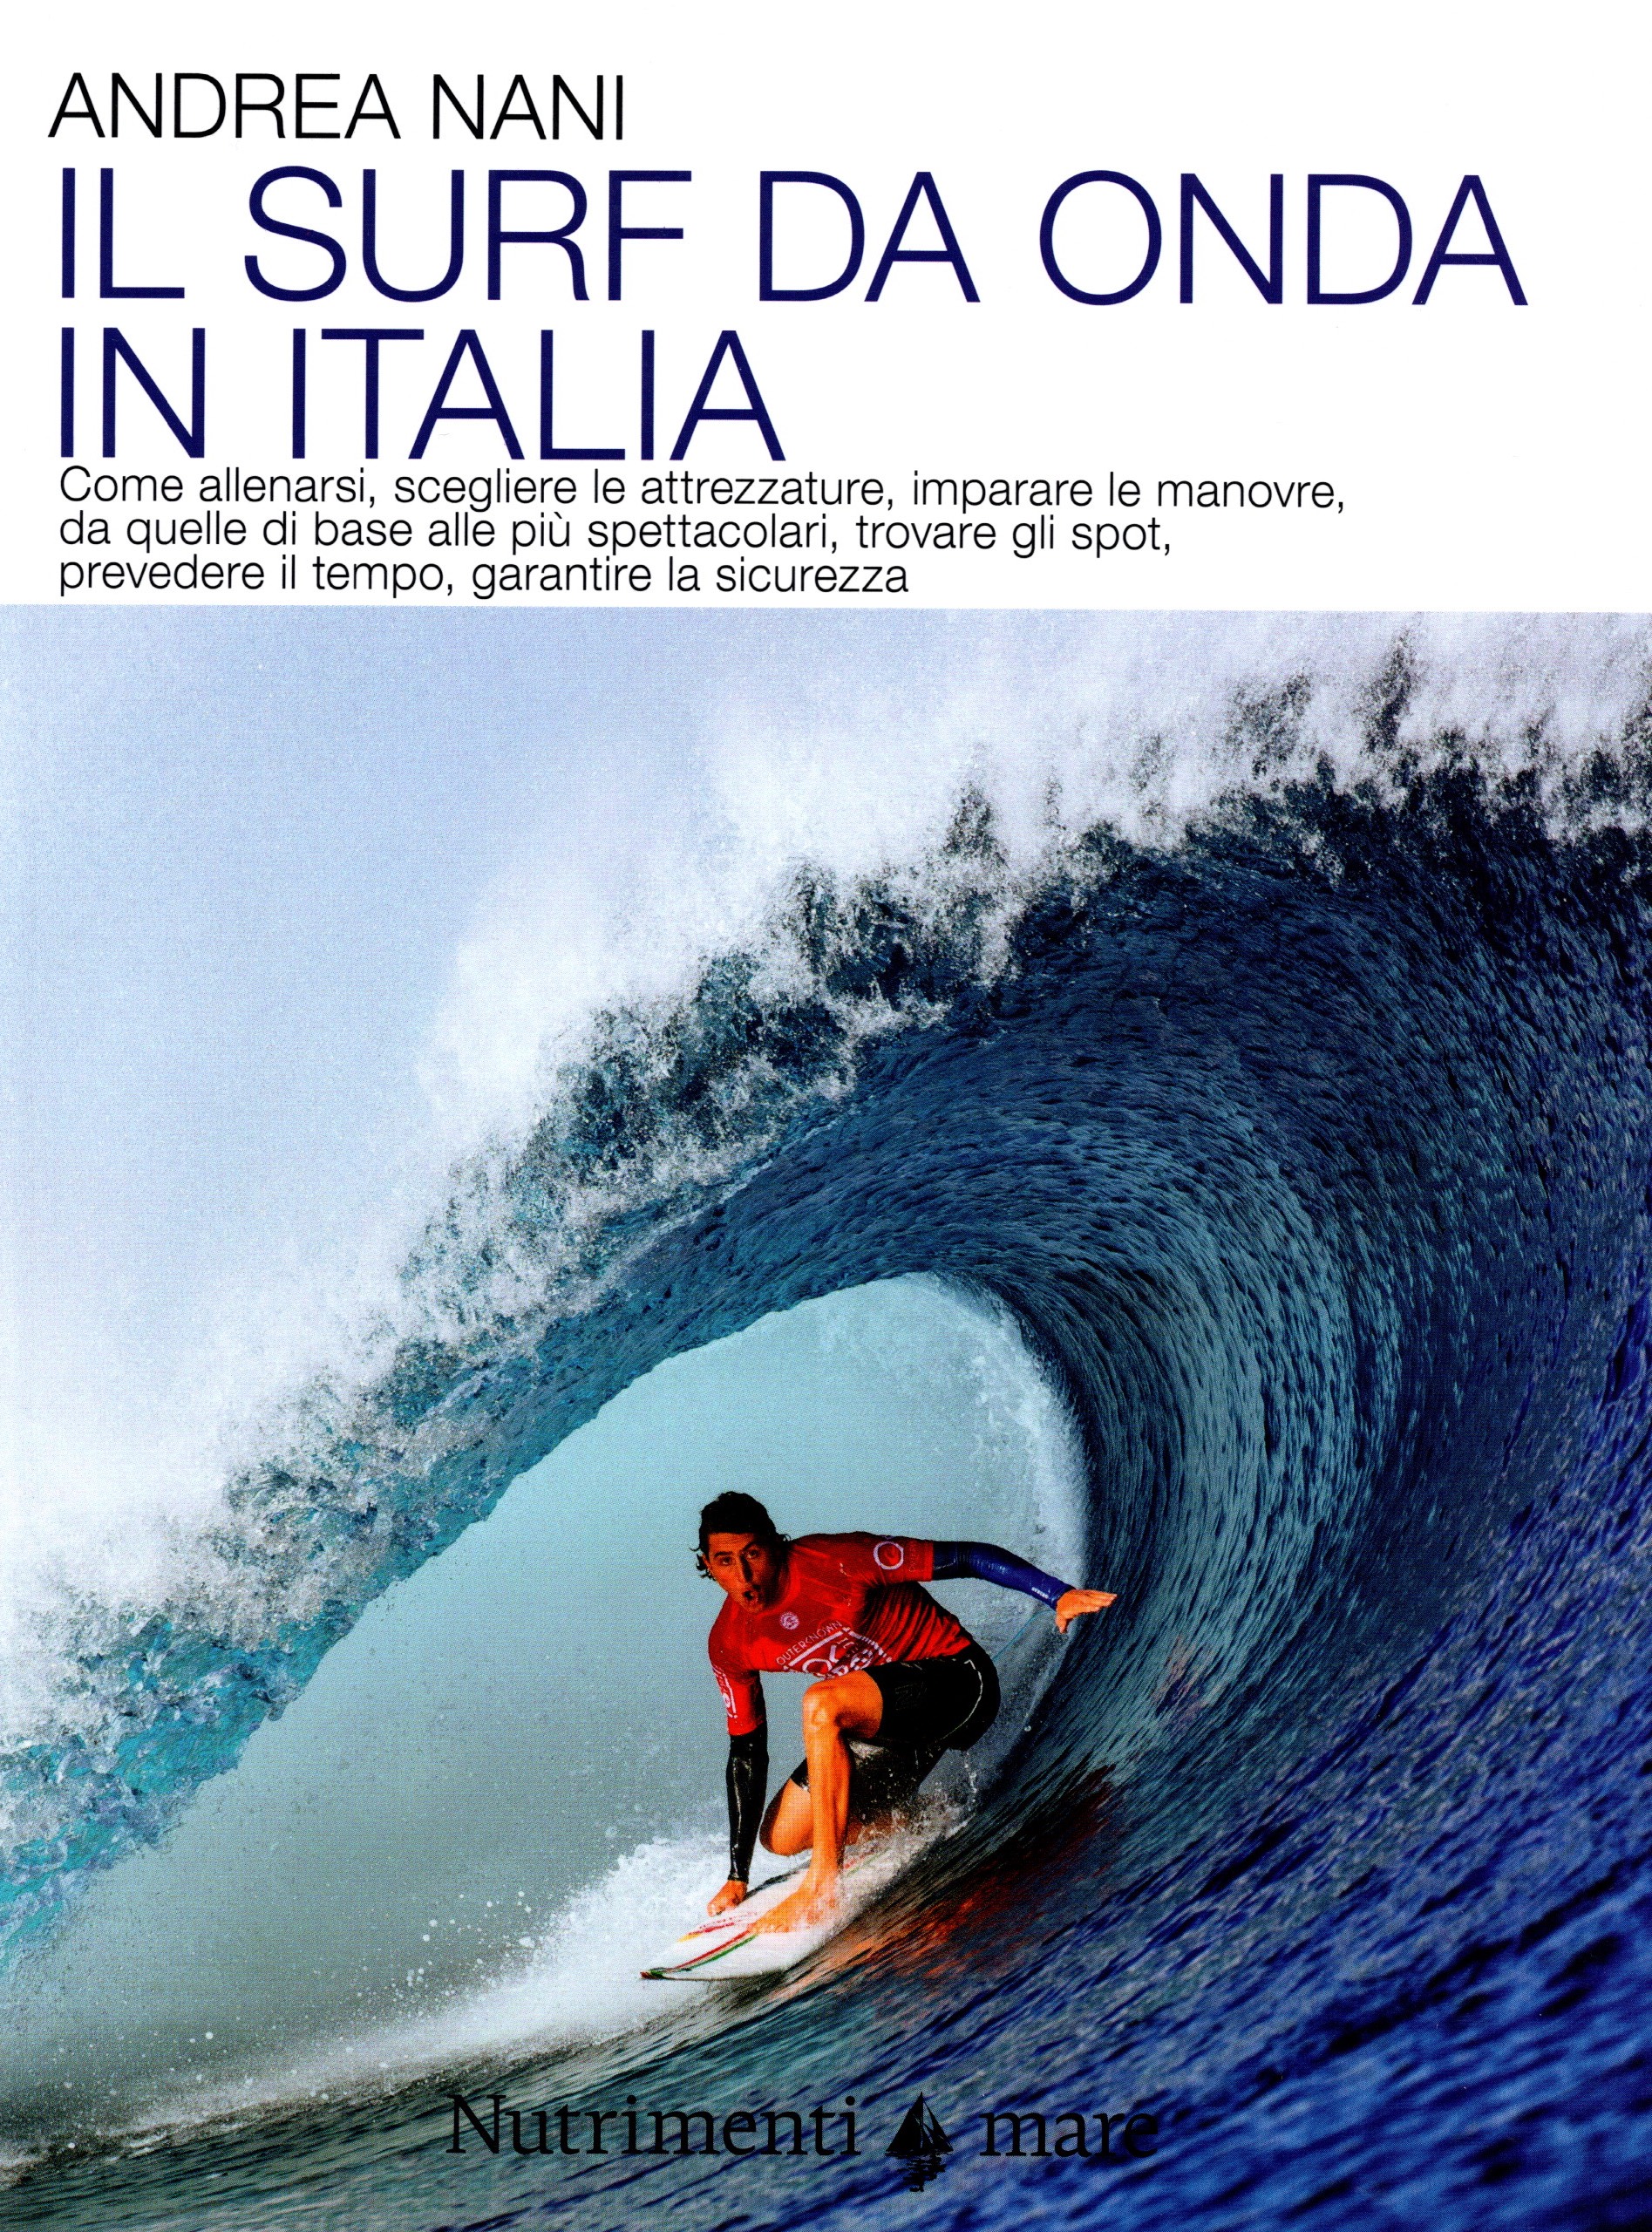 Il Surf da onda in italia